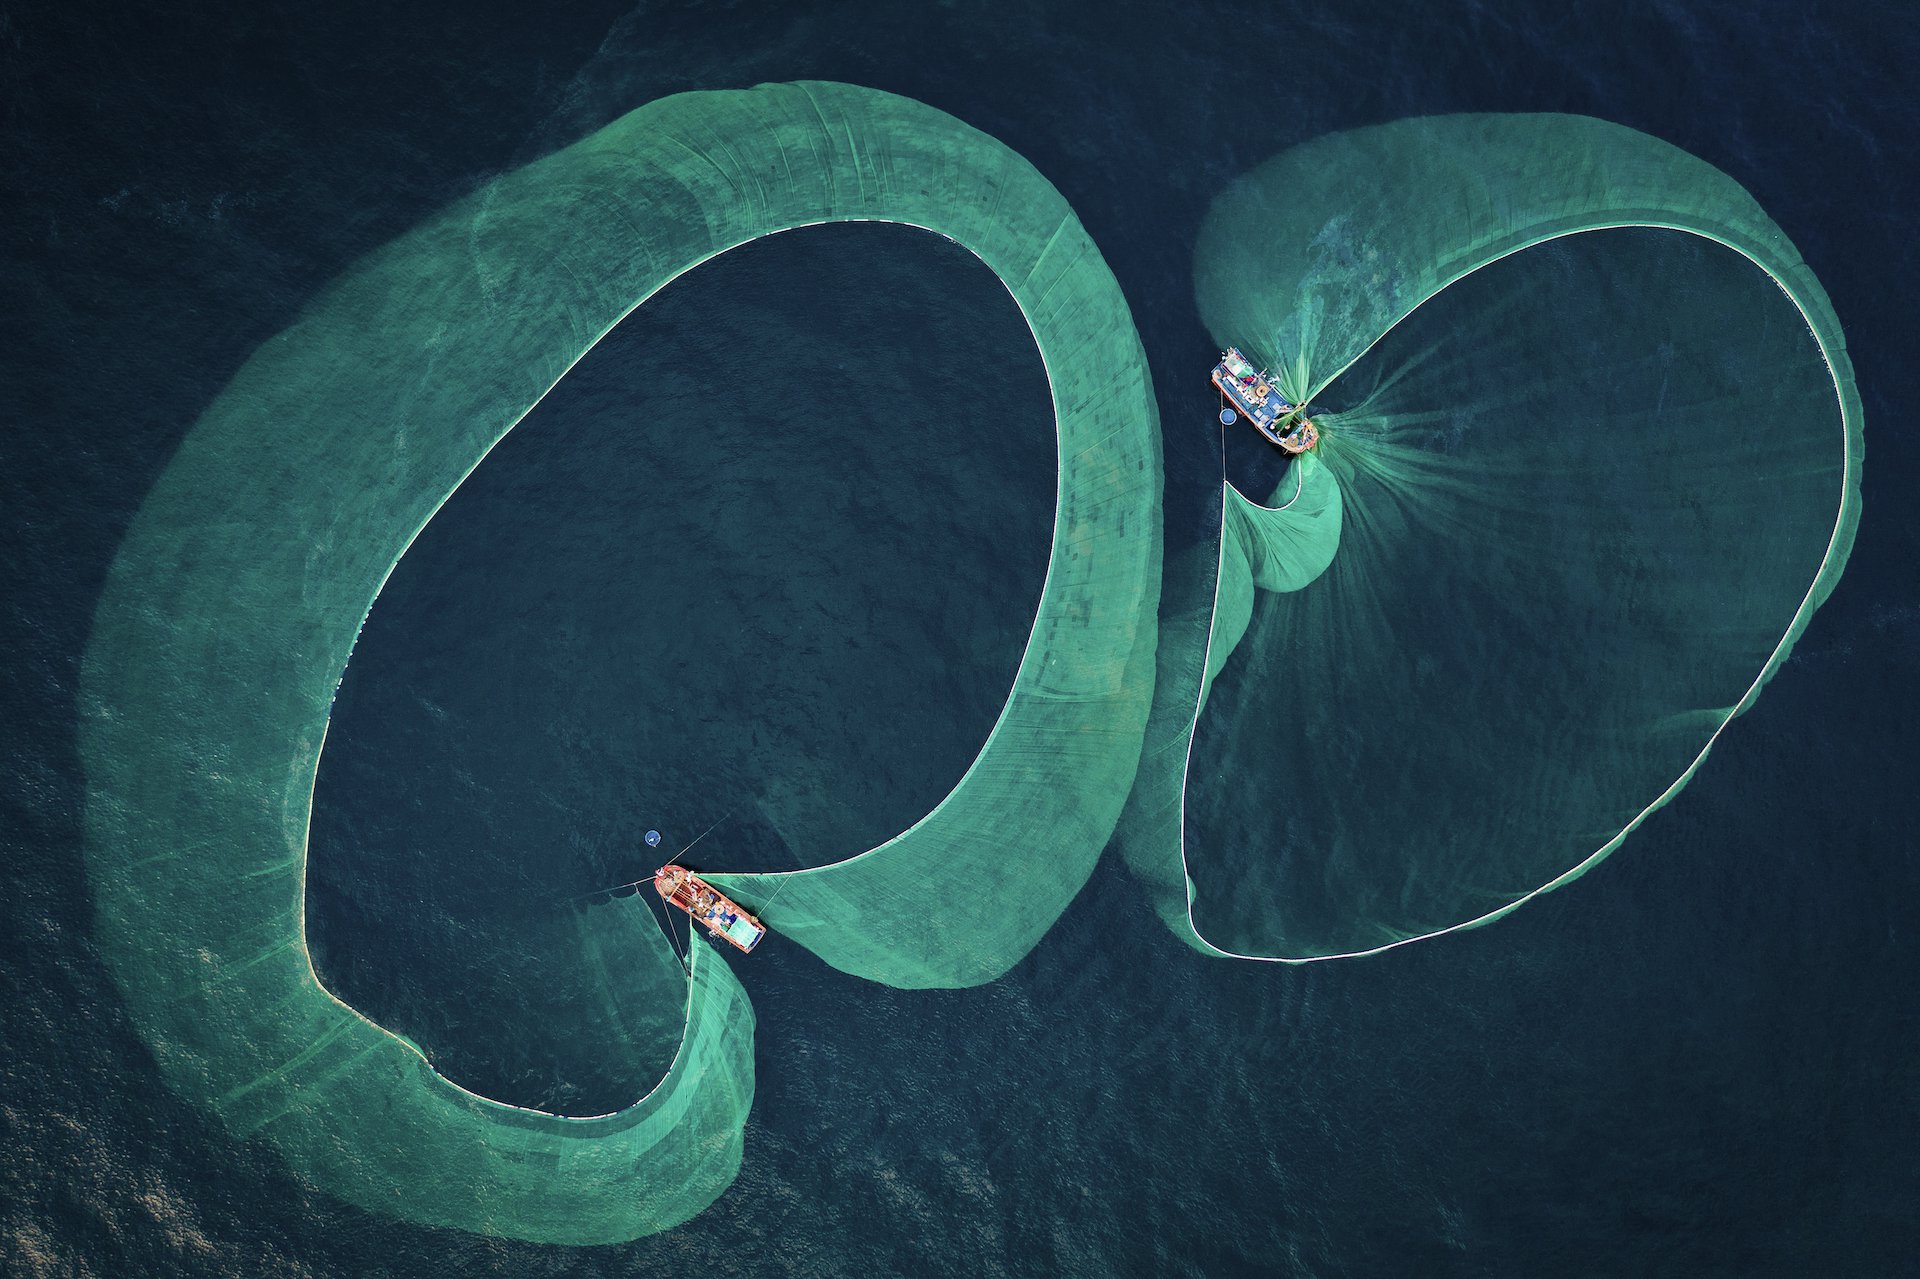 Cuộc thi Nhiếp ảnh dưới nước 2022 (Underwater Photographer of the Year) đã nhận được hơn 4.200 tác phẩm dự thi từ khắp nơi trên thế giới. Trong đó, bức ảnh của Nguyễn Ngọc Thiện giành giải nhất hạng mục Bảo tồn biển. Tác phẩm thể hiện góc nhìn từ trên không về hoạt động đánh bắt cá cơm nhộn nhịp ngoài khơi tỉnh Phú Yên.